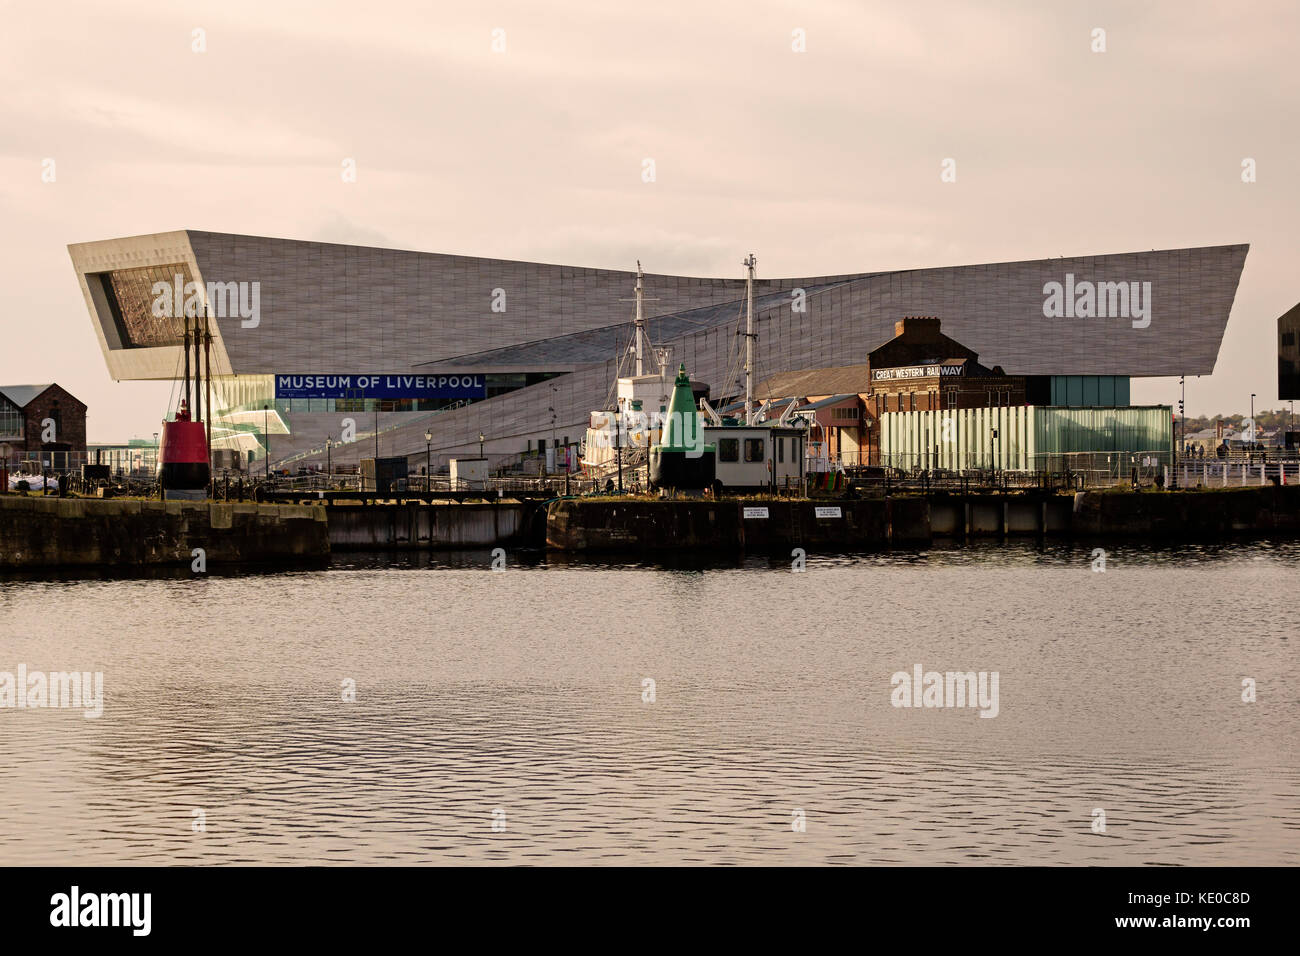 Pier Head, Liverpool, Royaume-Uni. Le Musée de Liverpool (2011) par les architectes danois 3XN. Il se situe sur le front de mer, donnant sur la Rivière Mersey Banque D'Images